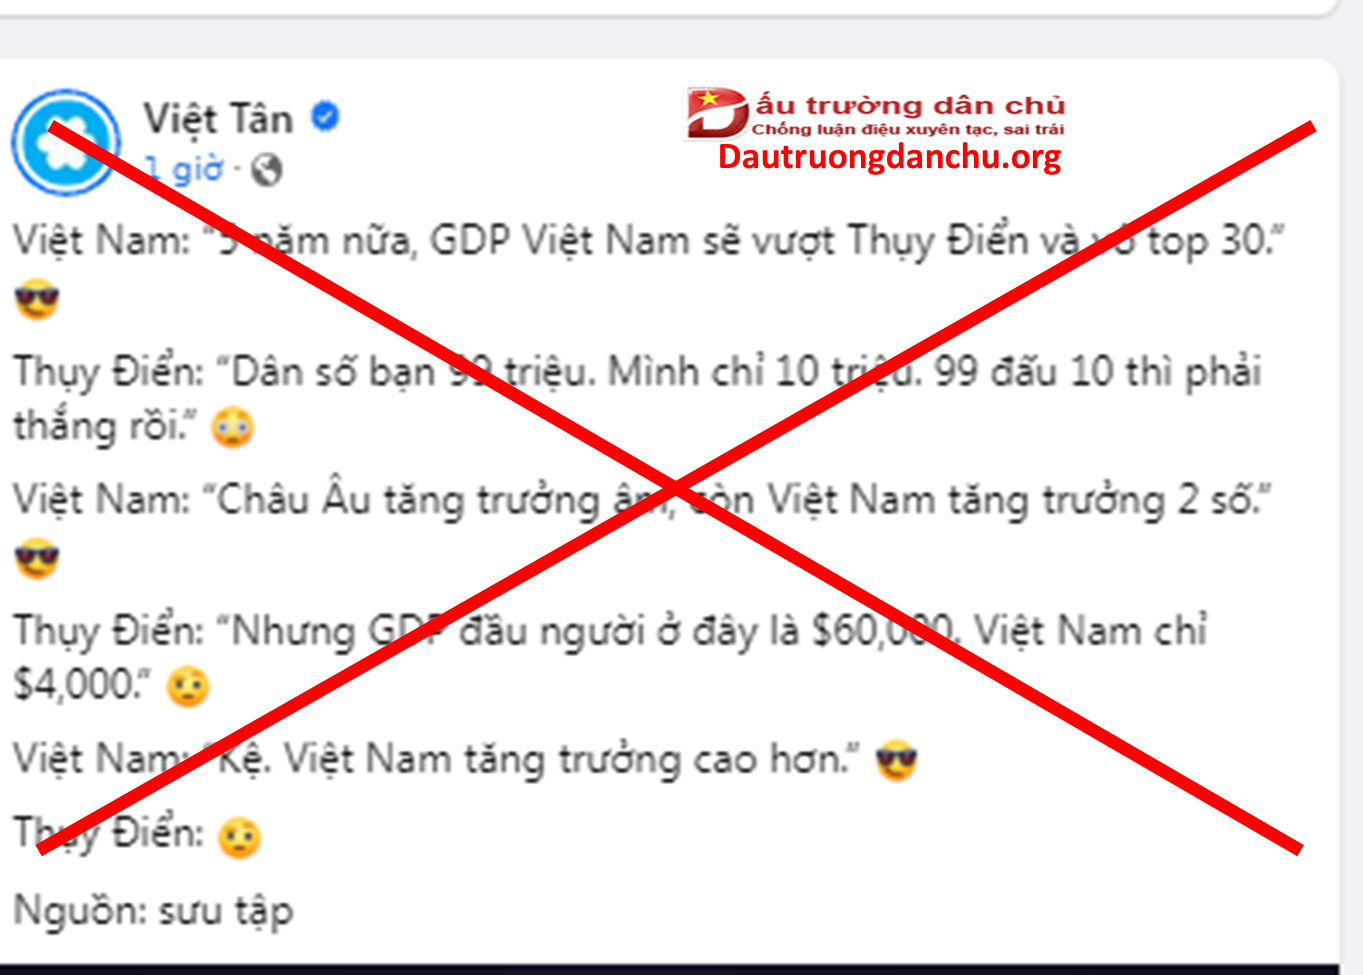 Sự vô lối của Việt Tân khi đưa thông tin lên mạng xã hội